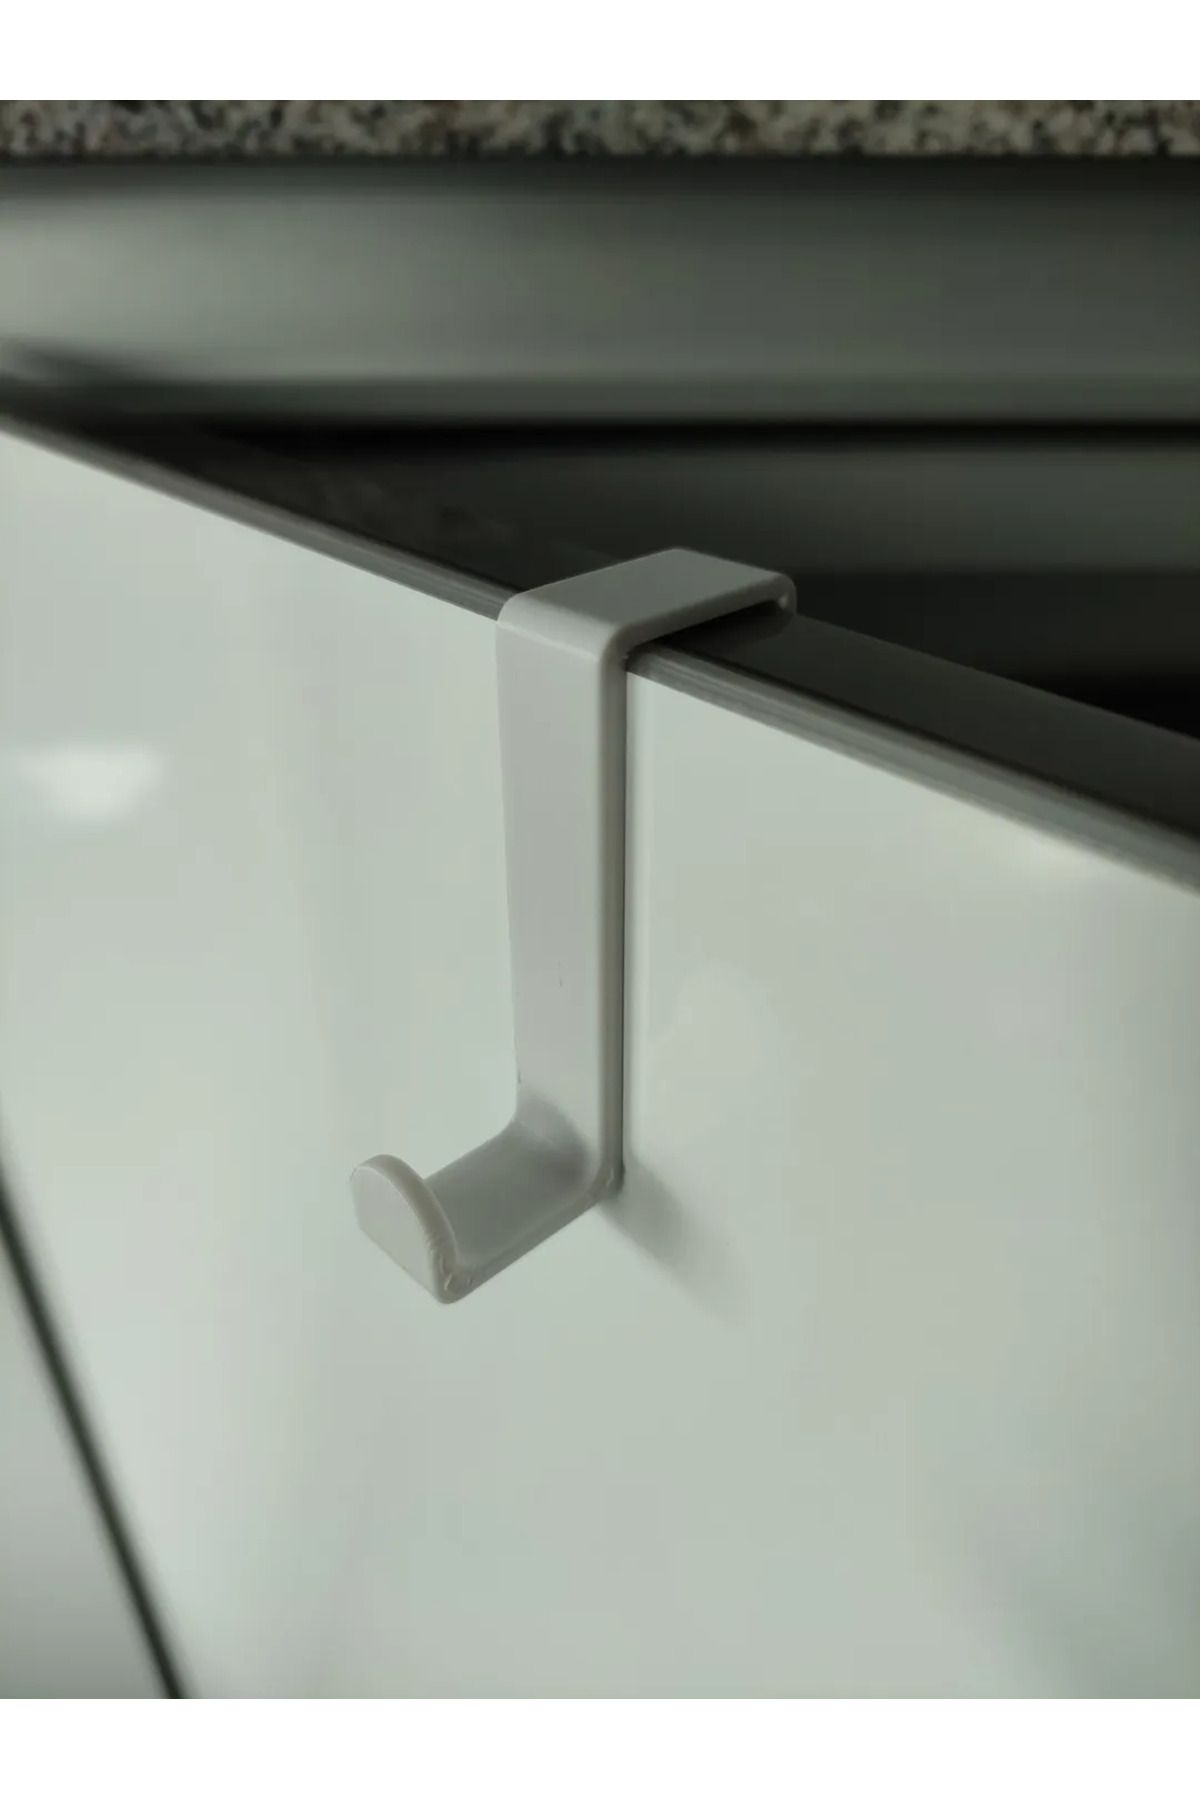 3D Stuff 4 Adet  Beyaz Yapışkanlı Askılık Kapı Arkası Bornoz Askılığı Mutfak Askı Banyo Askılık